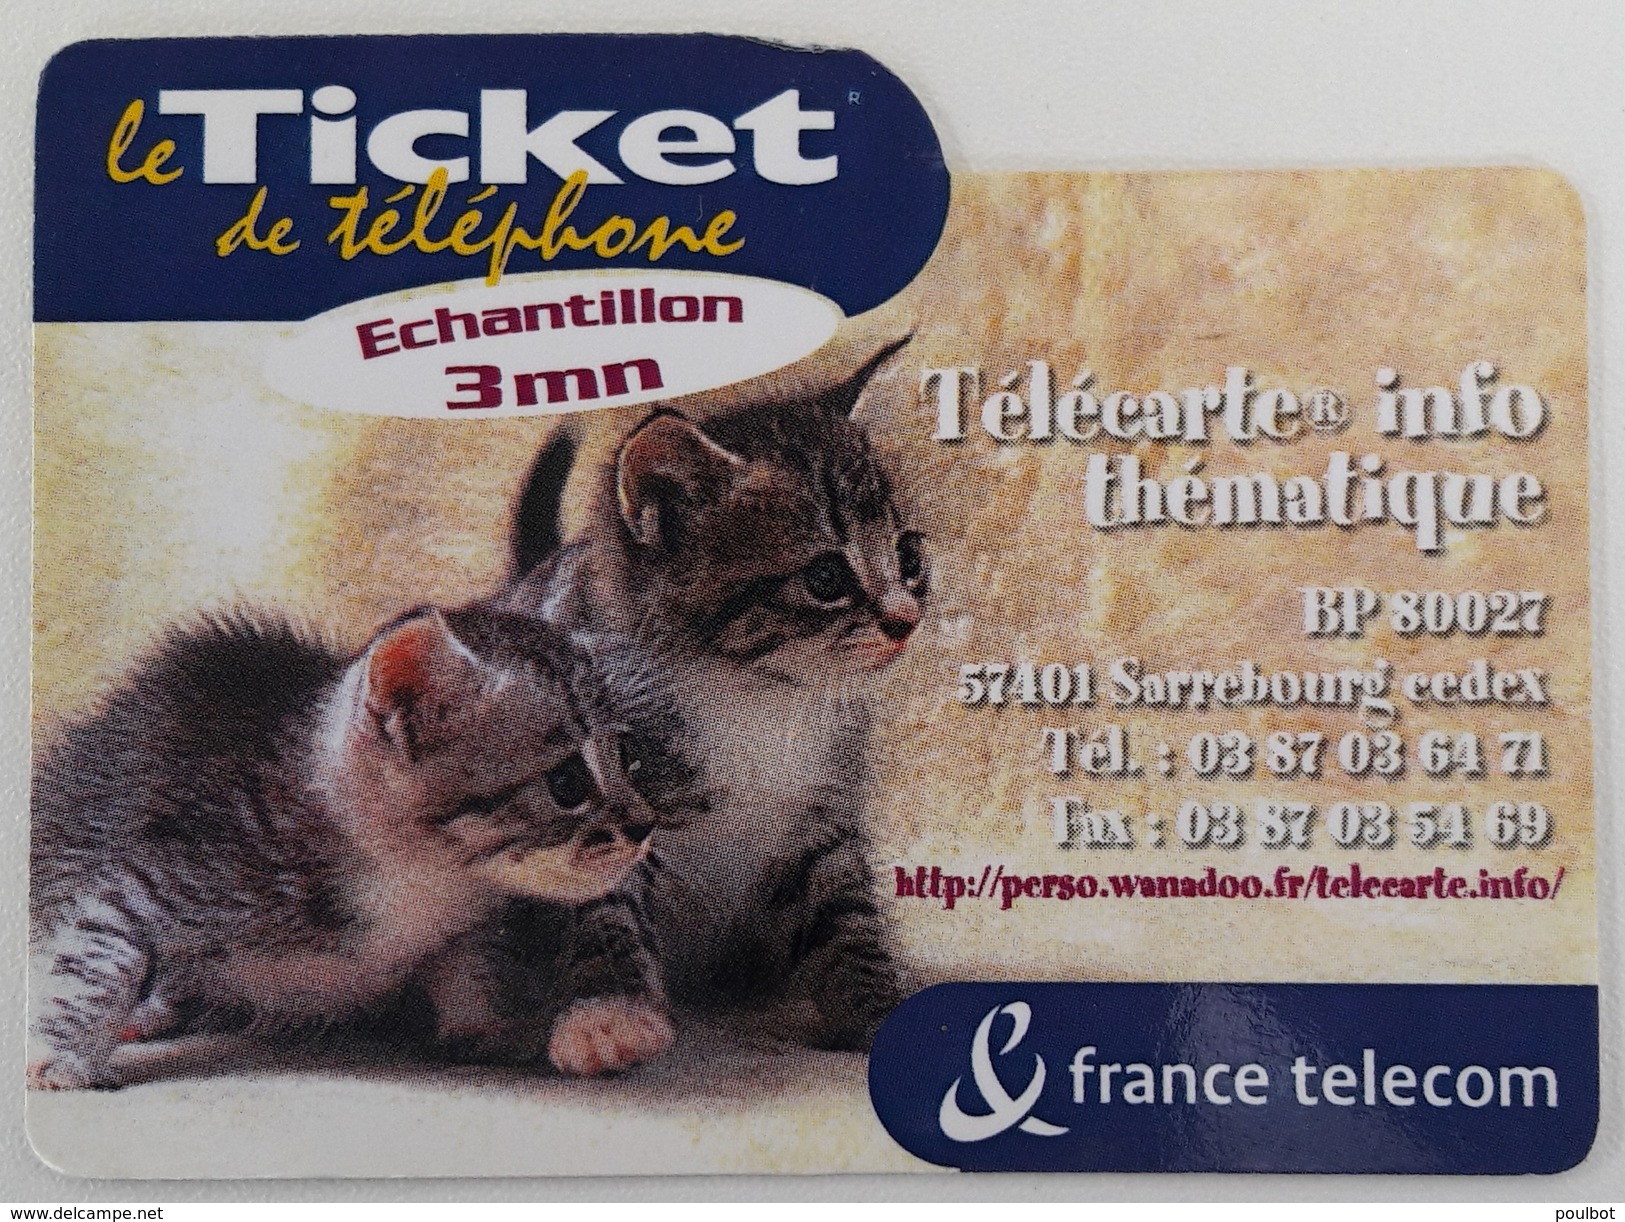 PR 59 Télécarte Info   Le Ticket France Télécom    Code Non  Gratté - FT Tickets